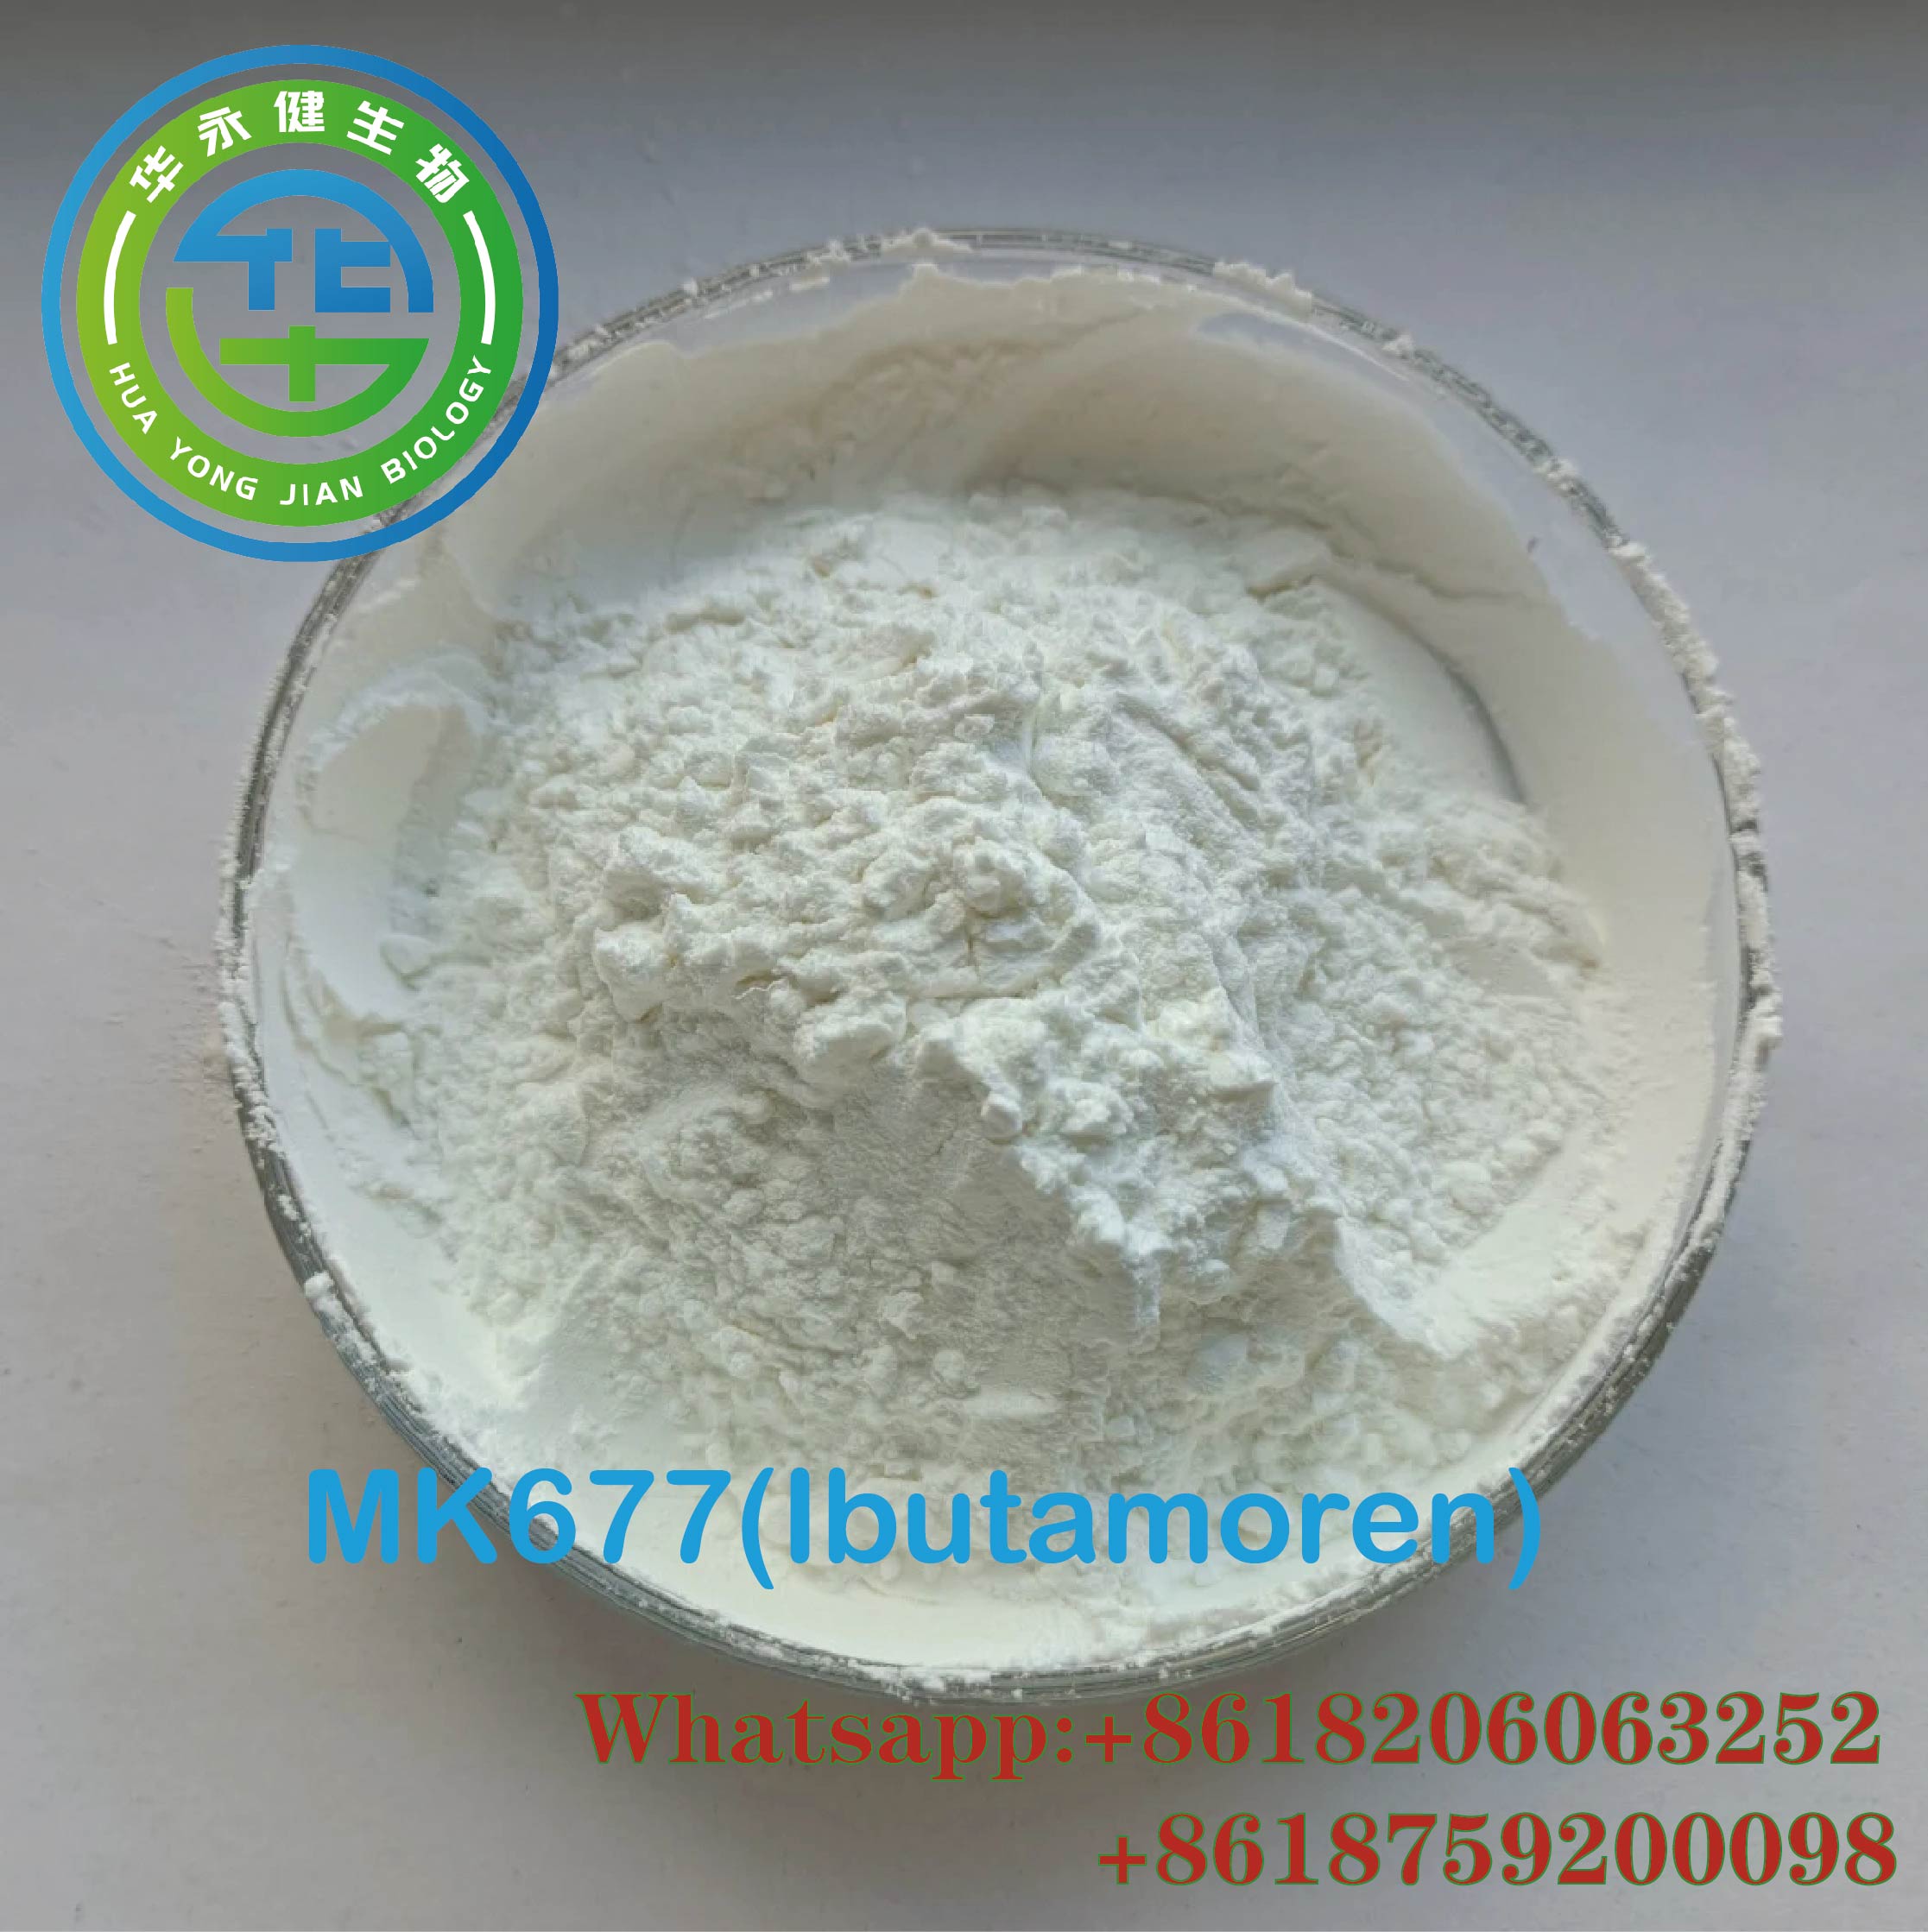 Kontaka Karon Mk677 Hot Selling Labing Maayo nga Kalidad 99% Ibutamoren Sarms Raw Material Powder Featured Image